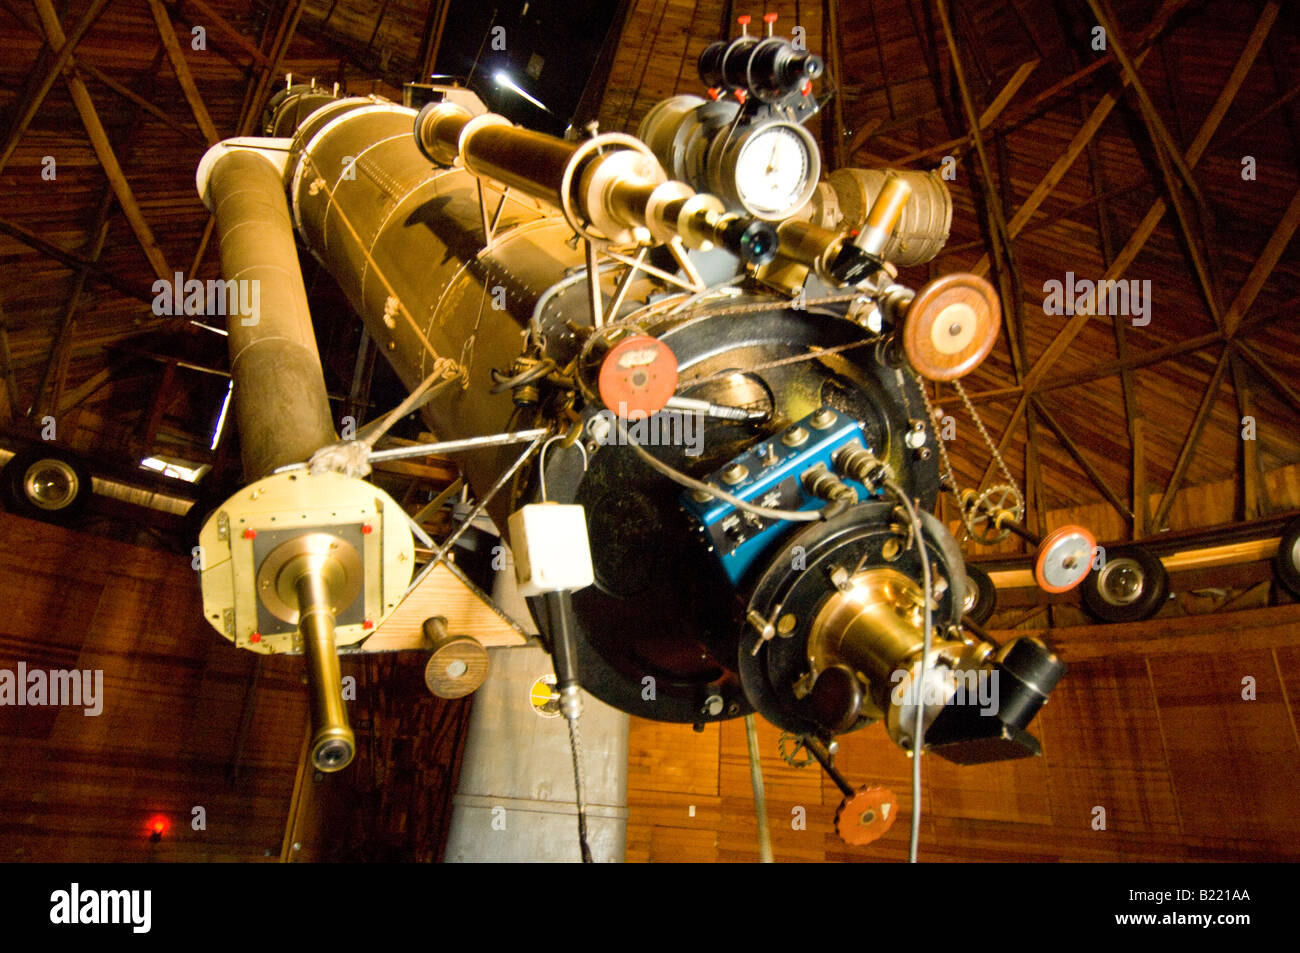 El telescopio de refracci n en la cúpula de Plutón en el Observatorio Lowell donde Clyde Tombaugh descubrió Plutón. Foto de stock